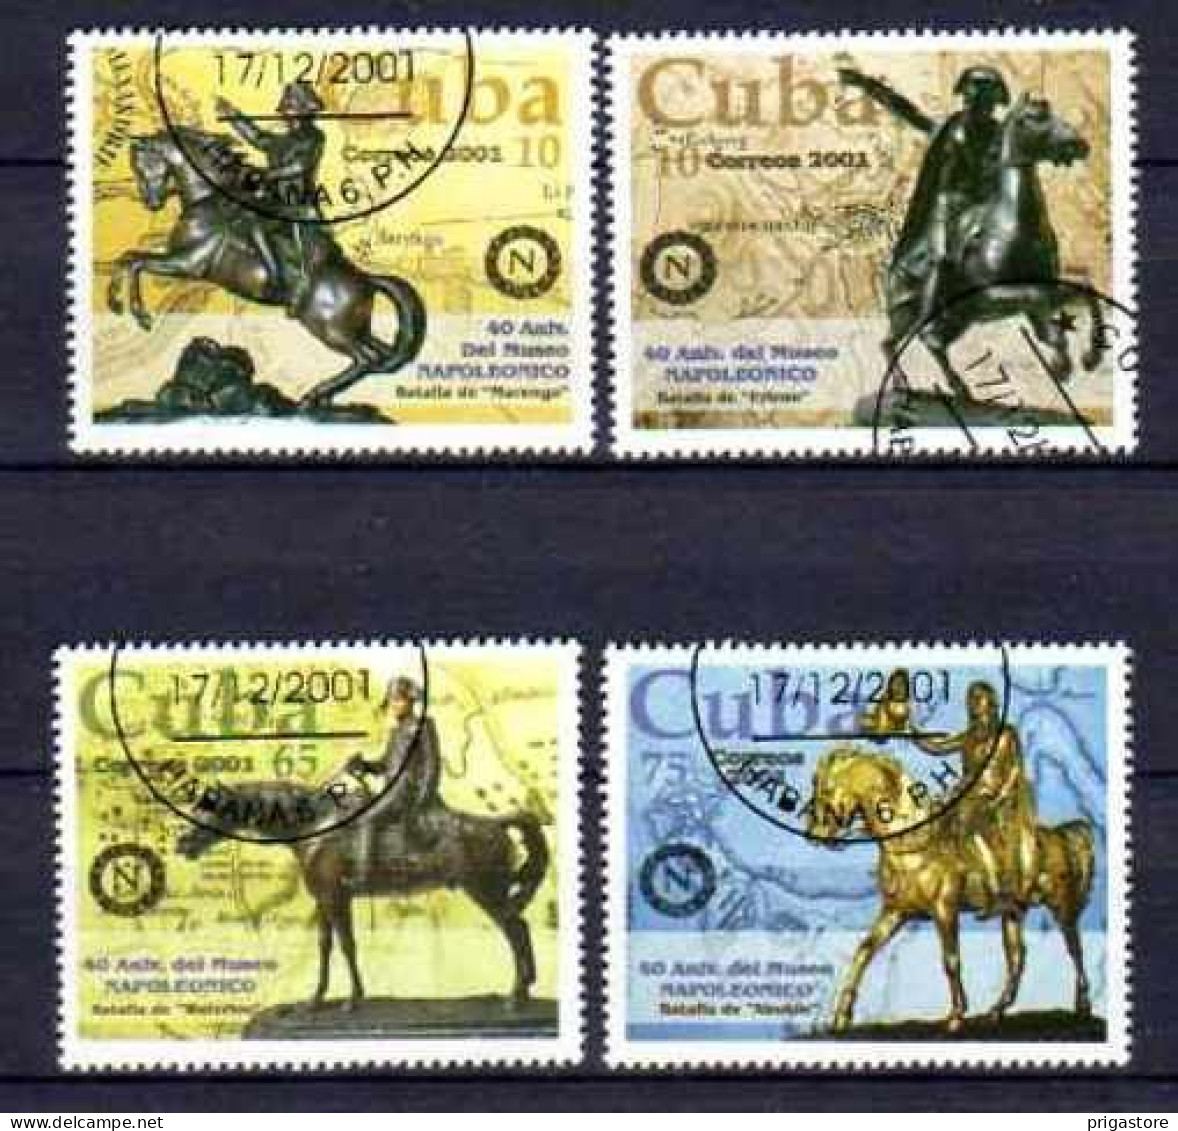 Chevaux Cuba 2001 (4) Yvert N° 3964 à 3967 Oblitéré Used - Horses